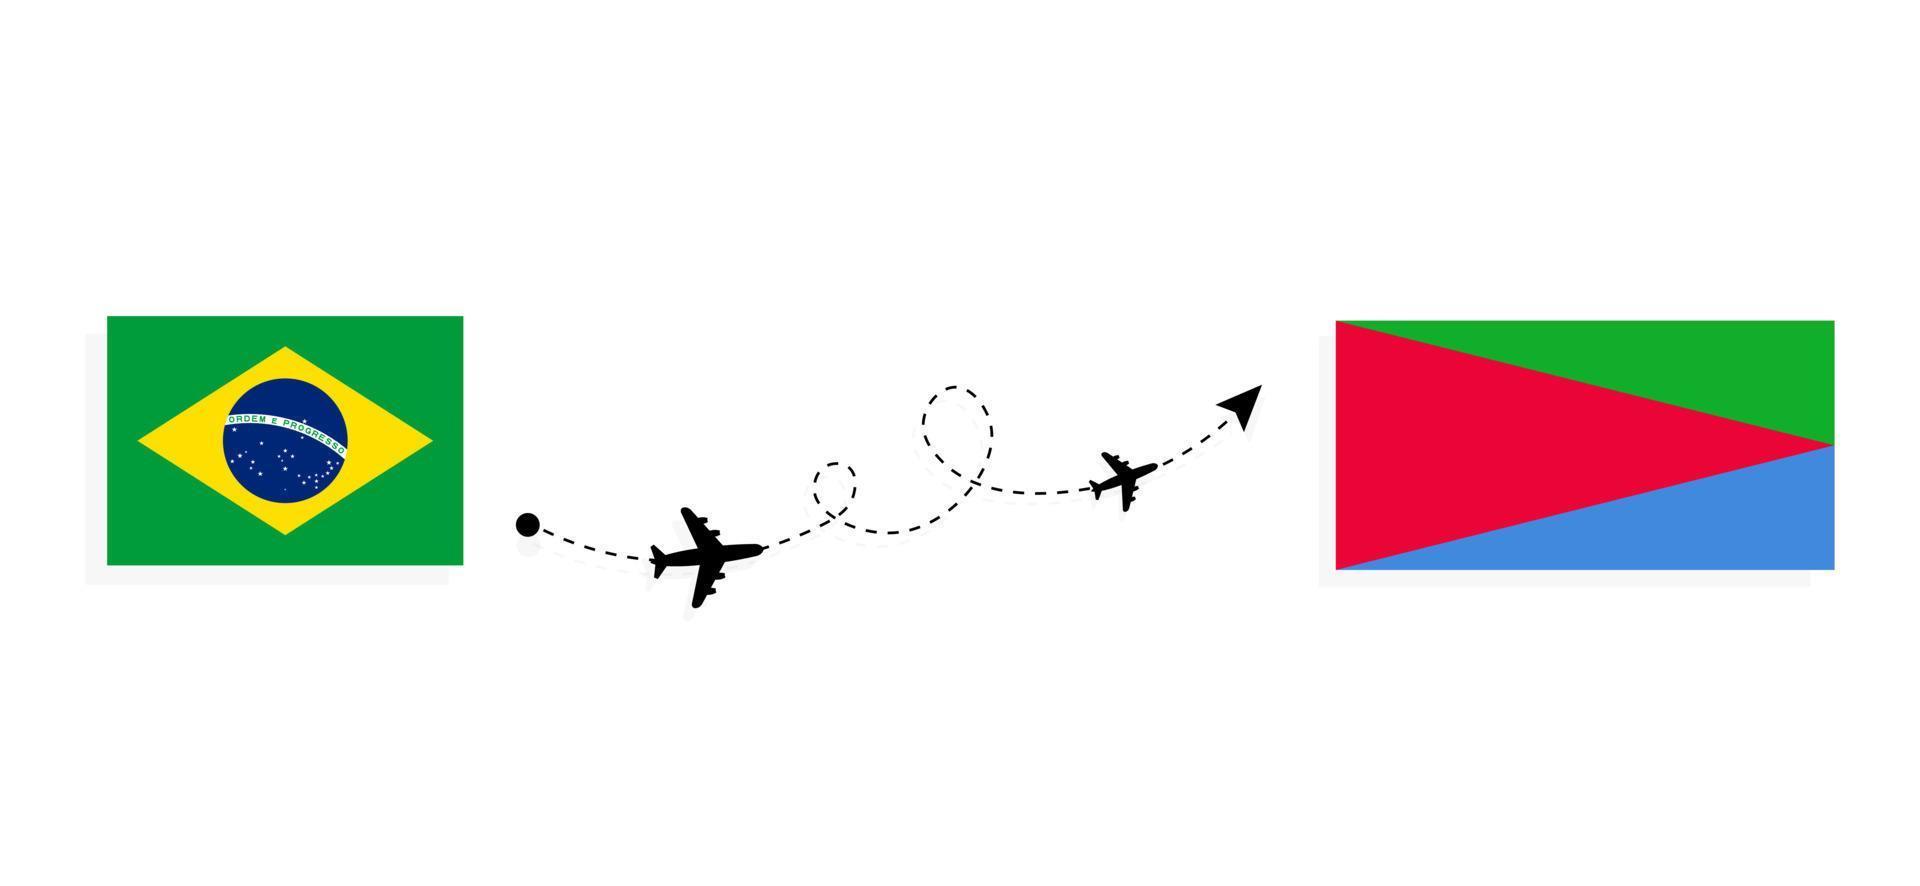 flyg och resor från Brasilien till Eritrea med passagerarflygplan vektor